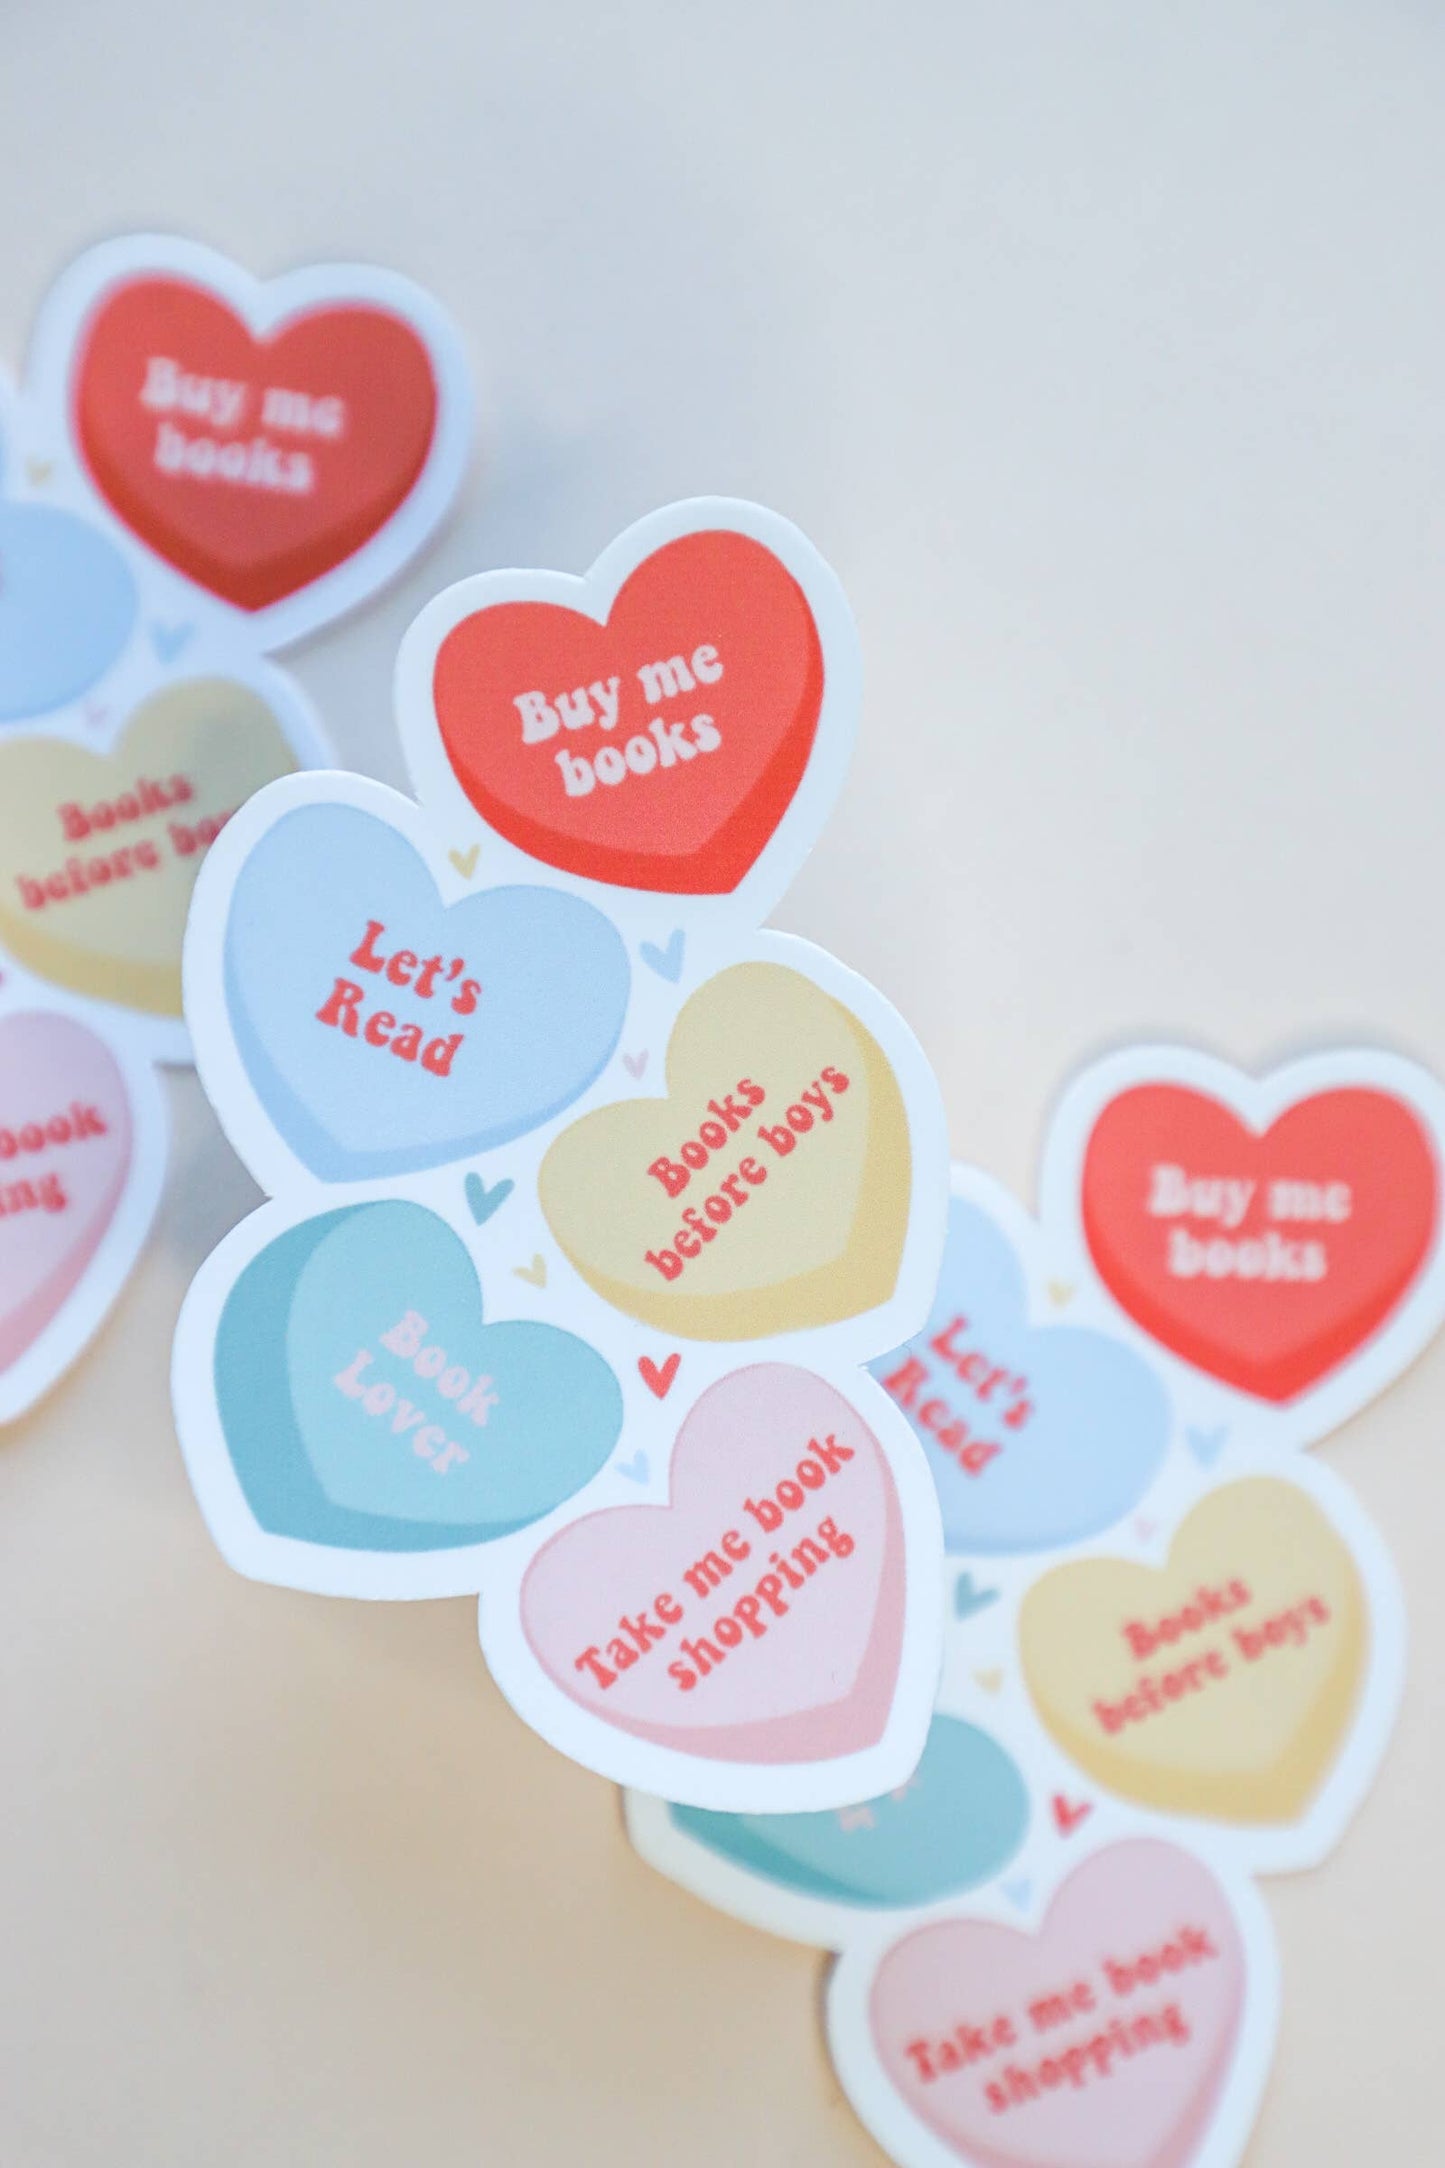 Sticker-Books-22: Bookish Conversation Hearts Sticker